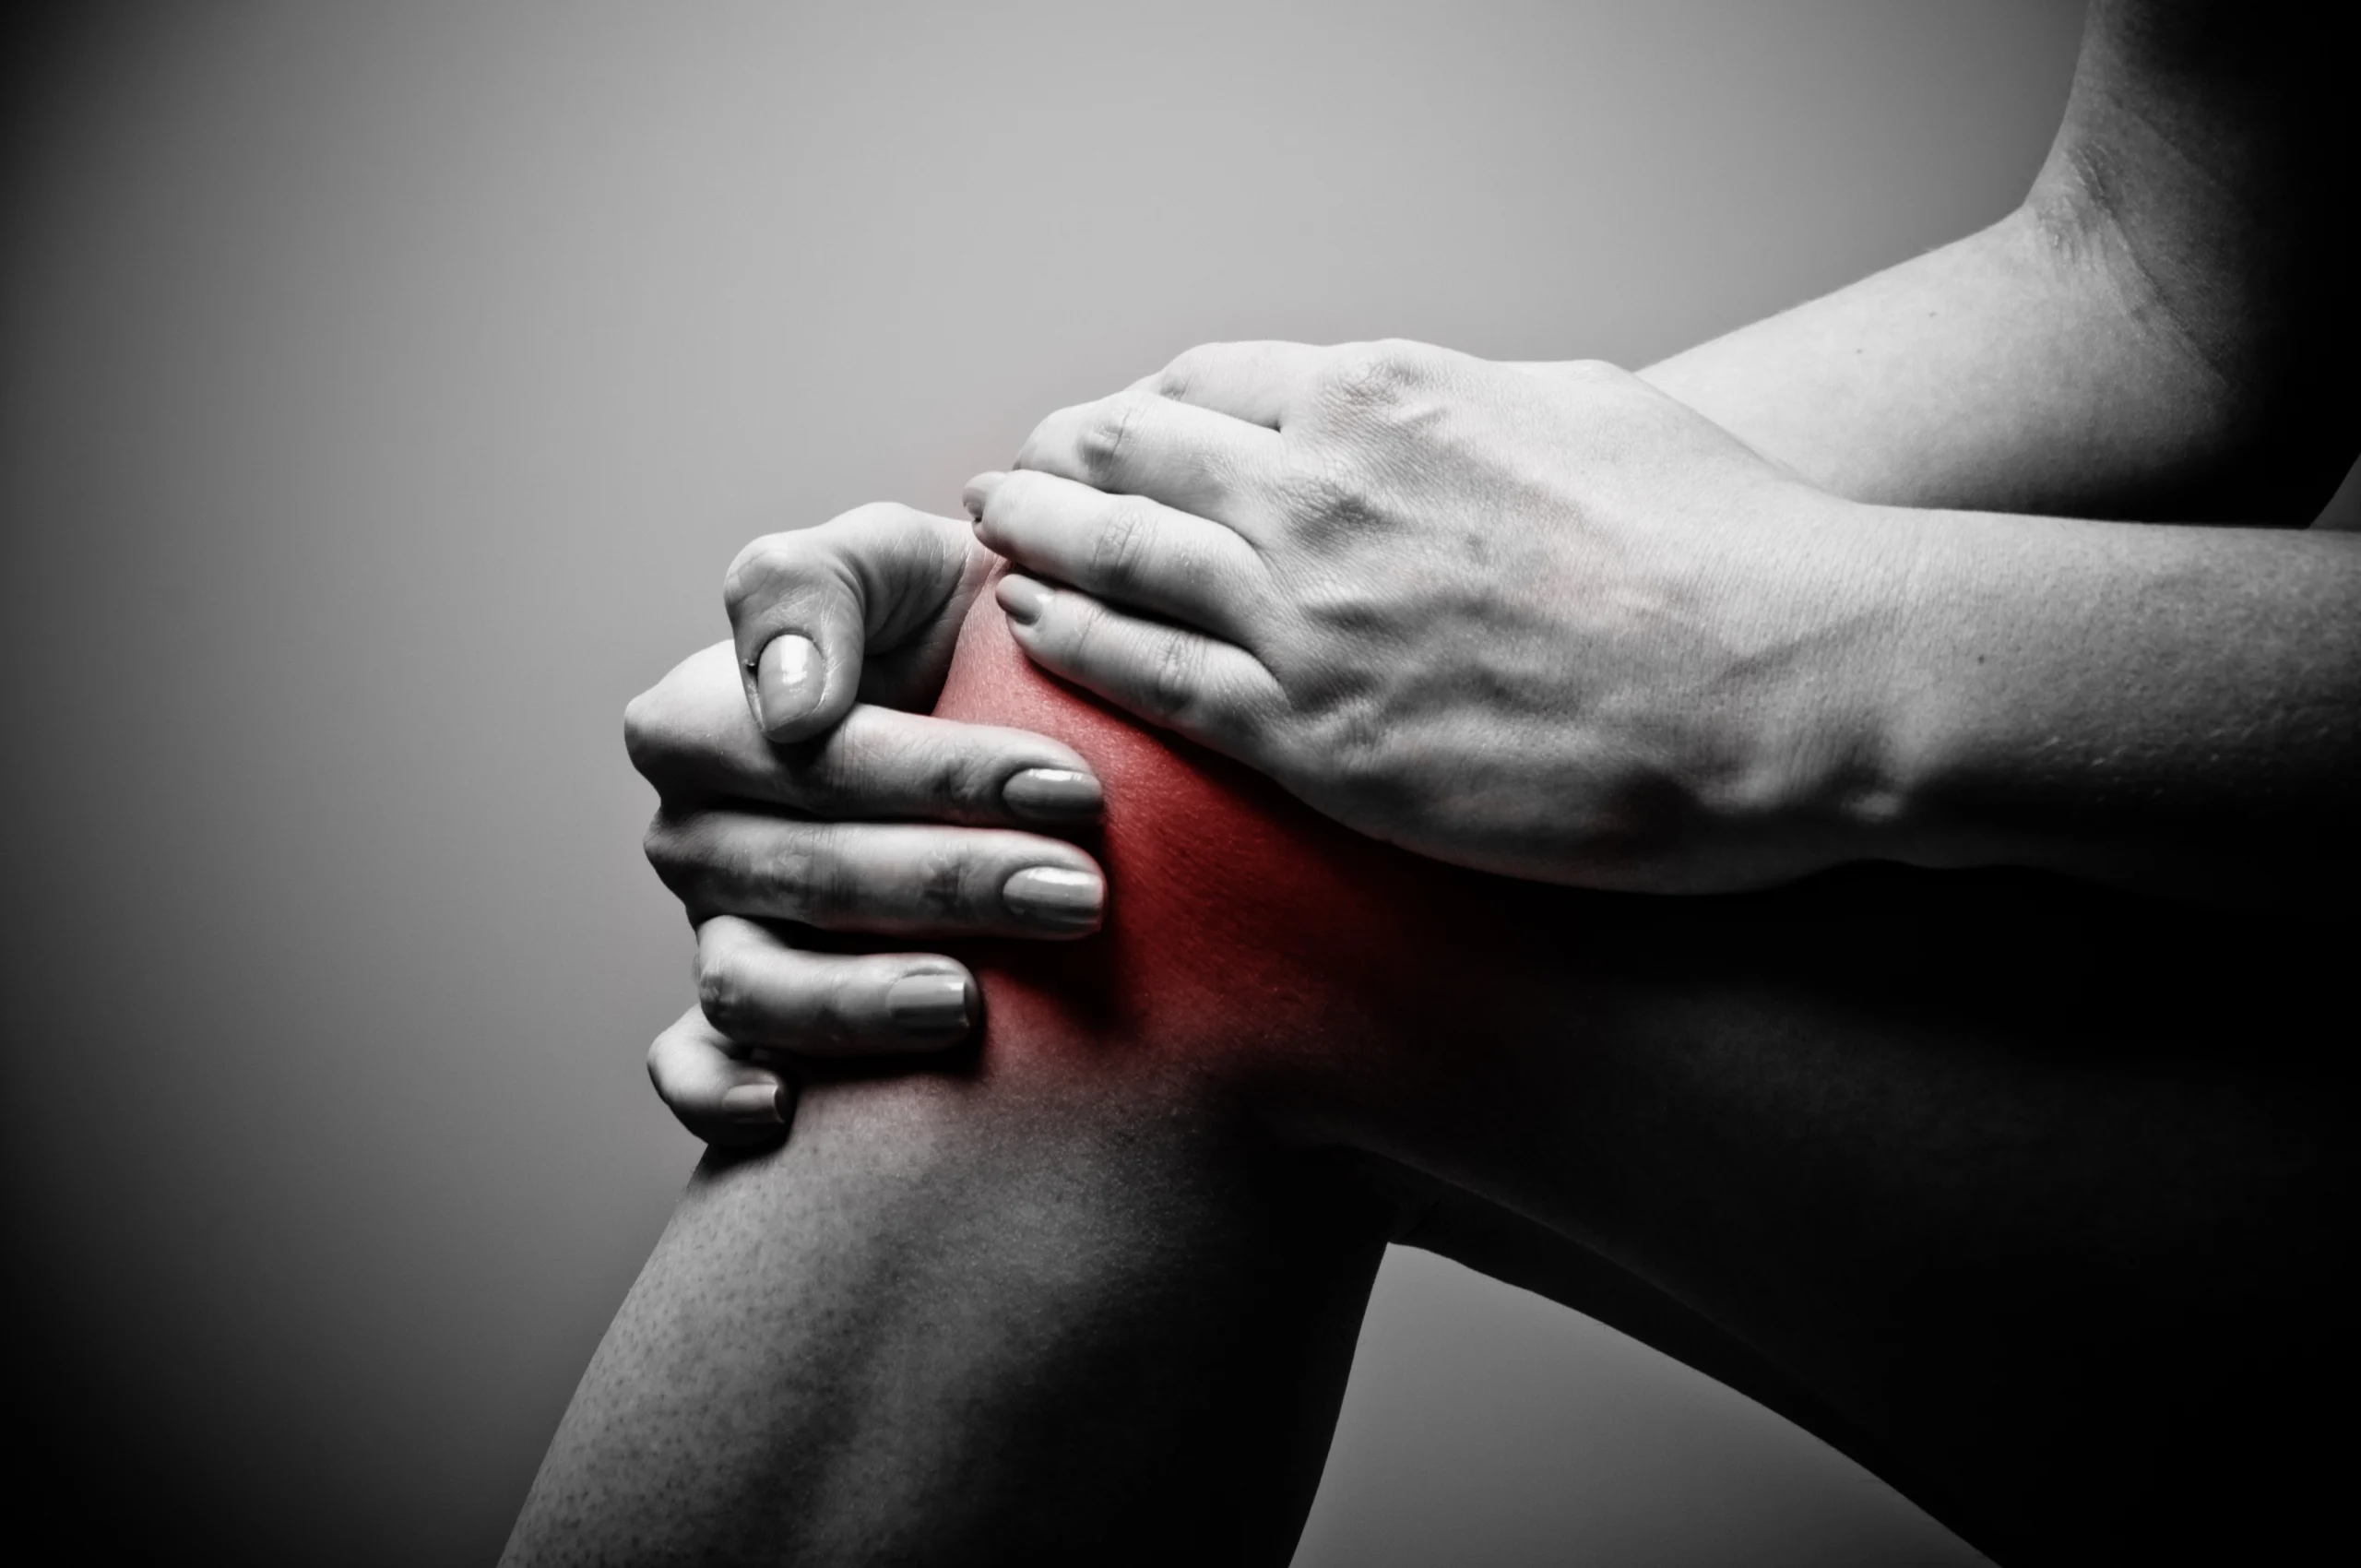 pain when bending knees